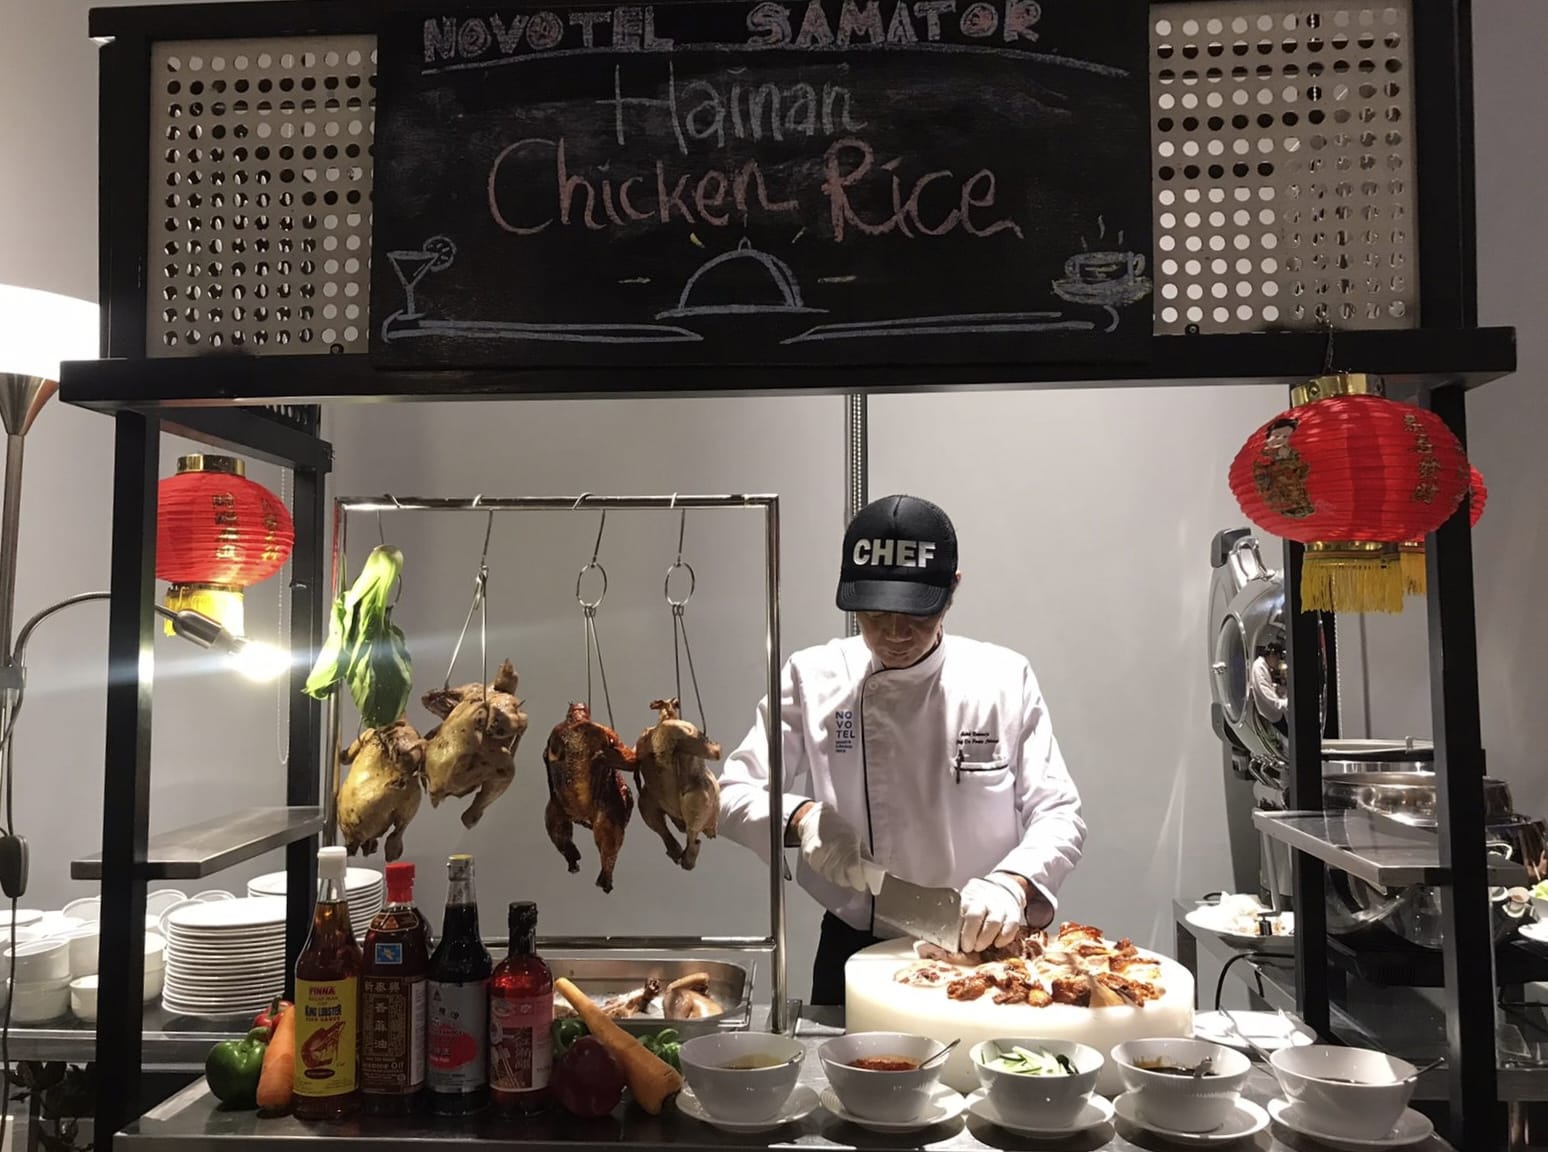 Hainan Chicken Rice - Novotel Samator Surabaya Timur